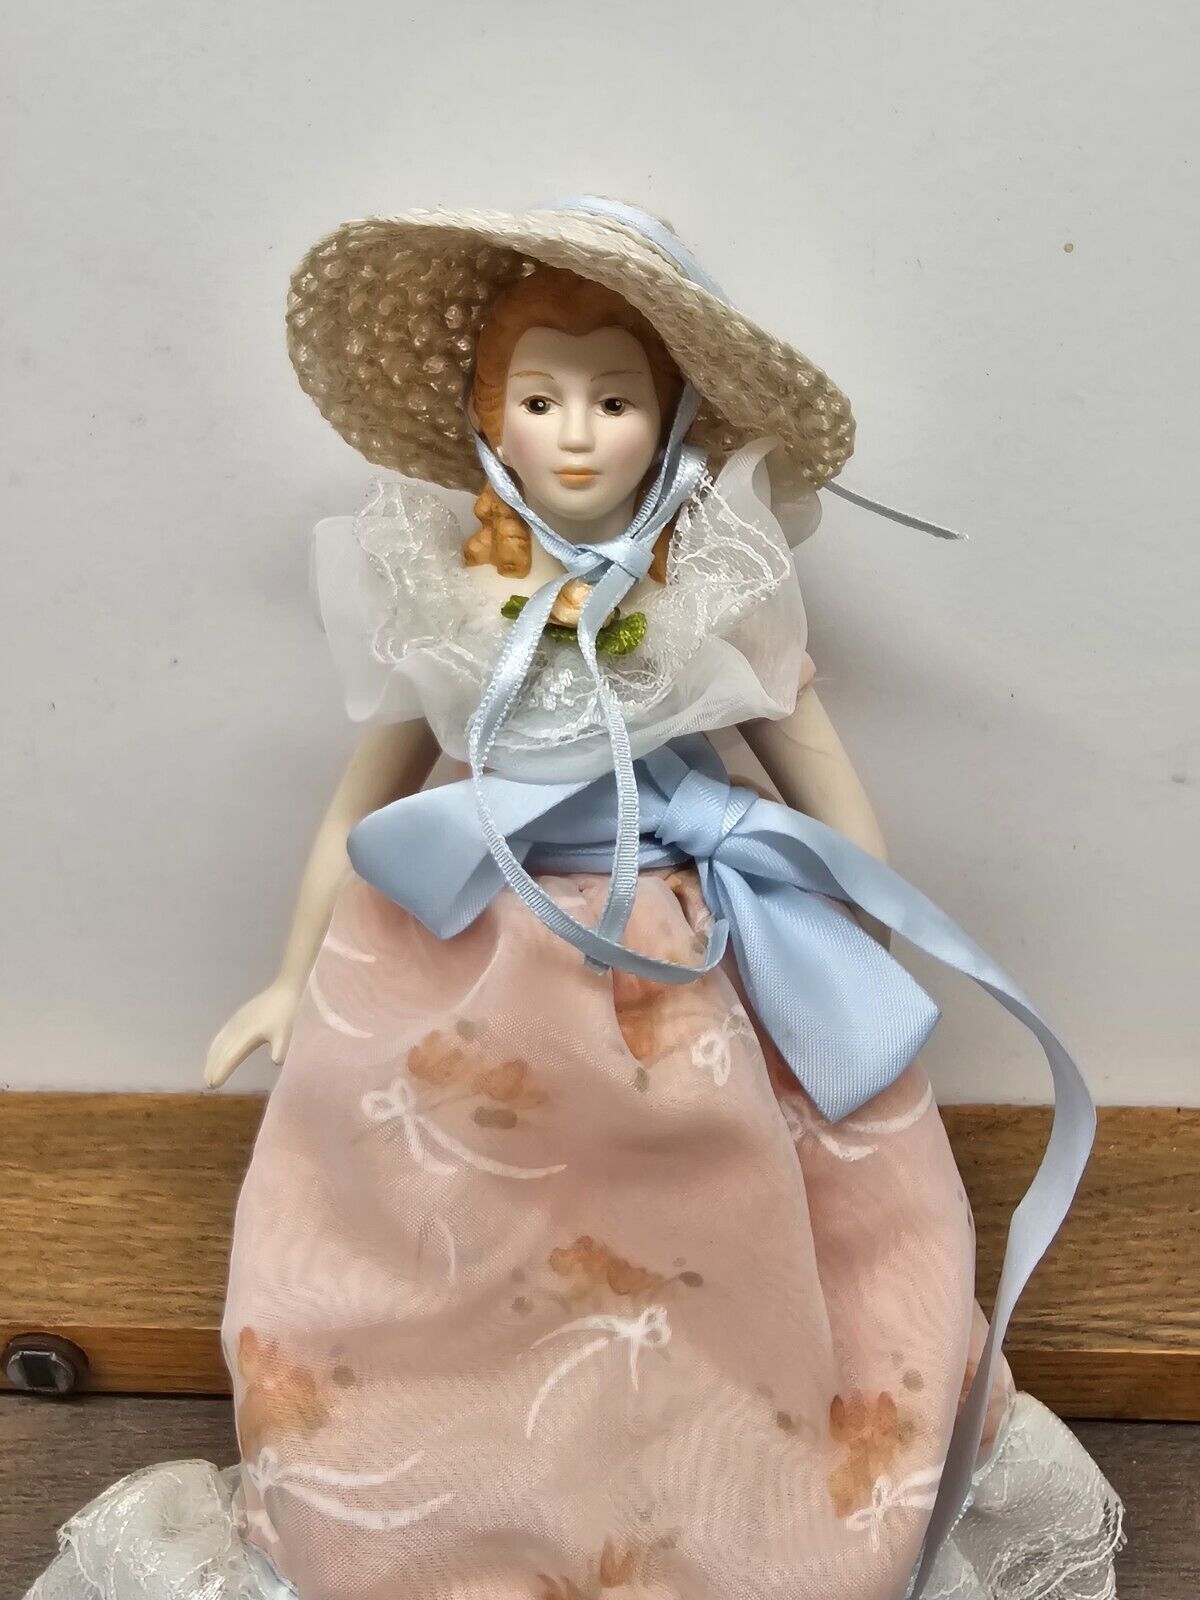 1988 Vintage Avon Porcelain Doll Southern Belle